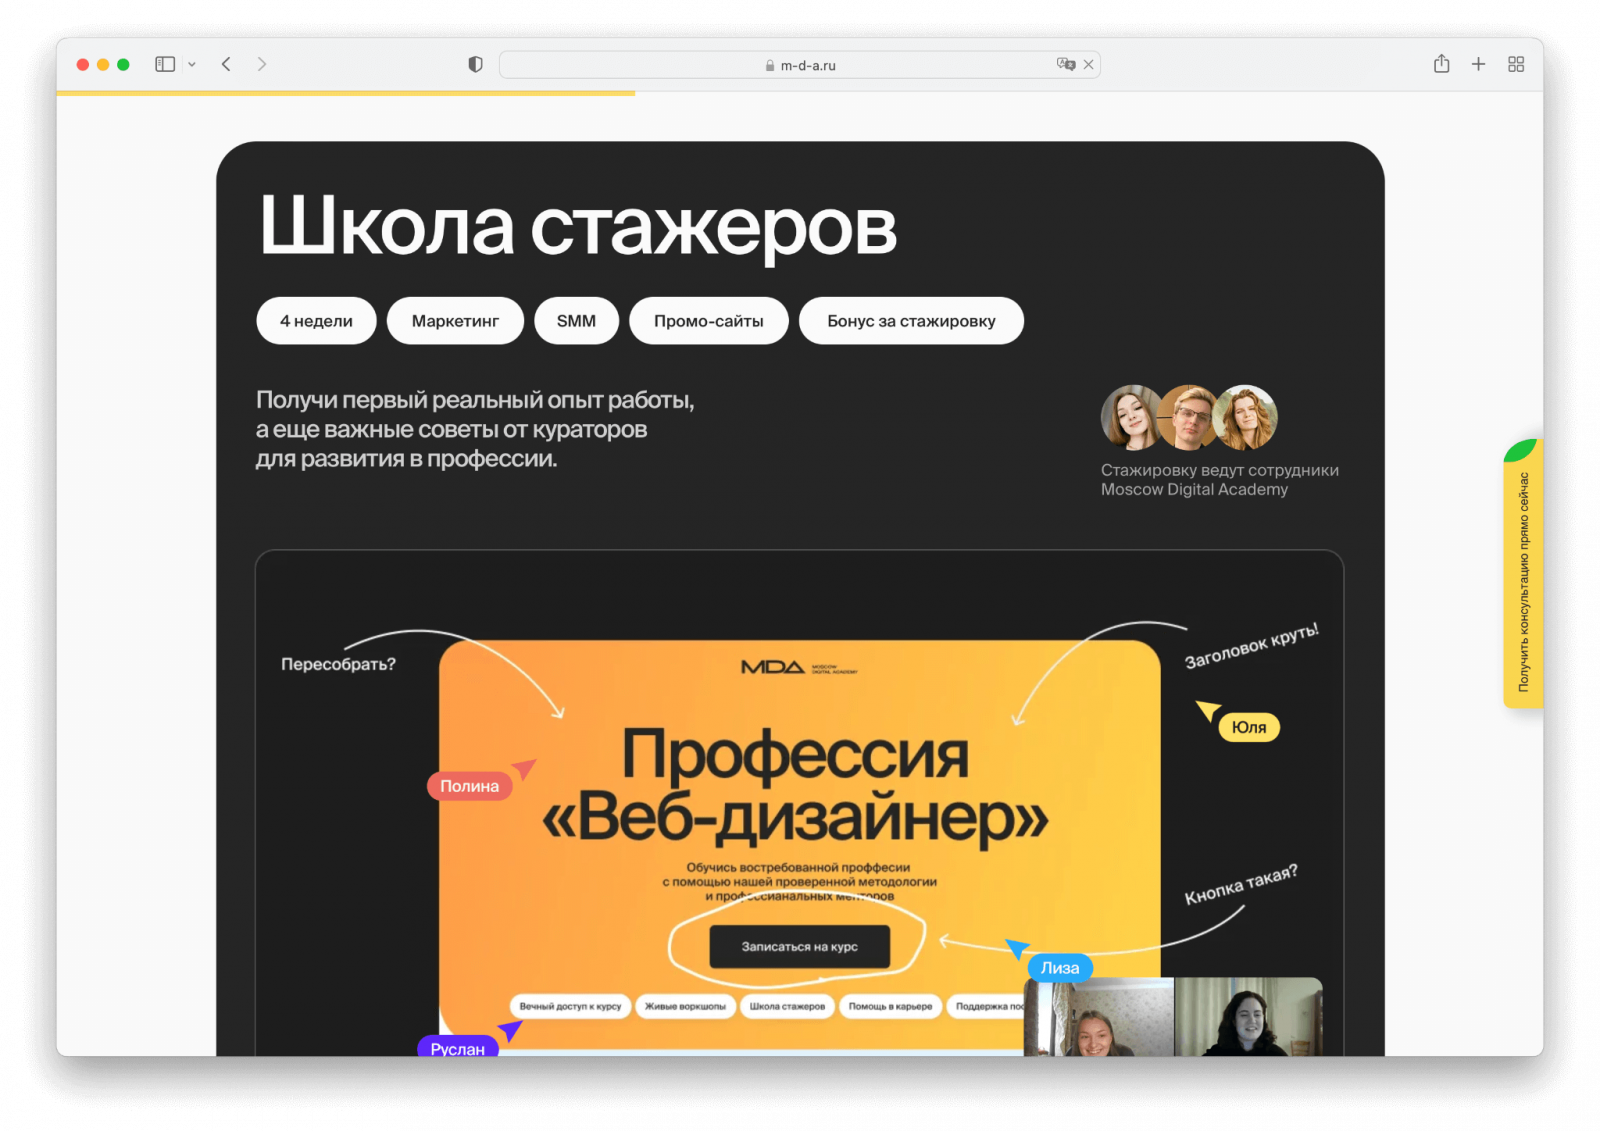 Moscow Digital Academy – UX/UI дизайнер. Обучение веб-дизайну, графическому дизайну, java-разработке, motion-дизайну